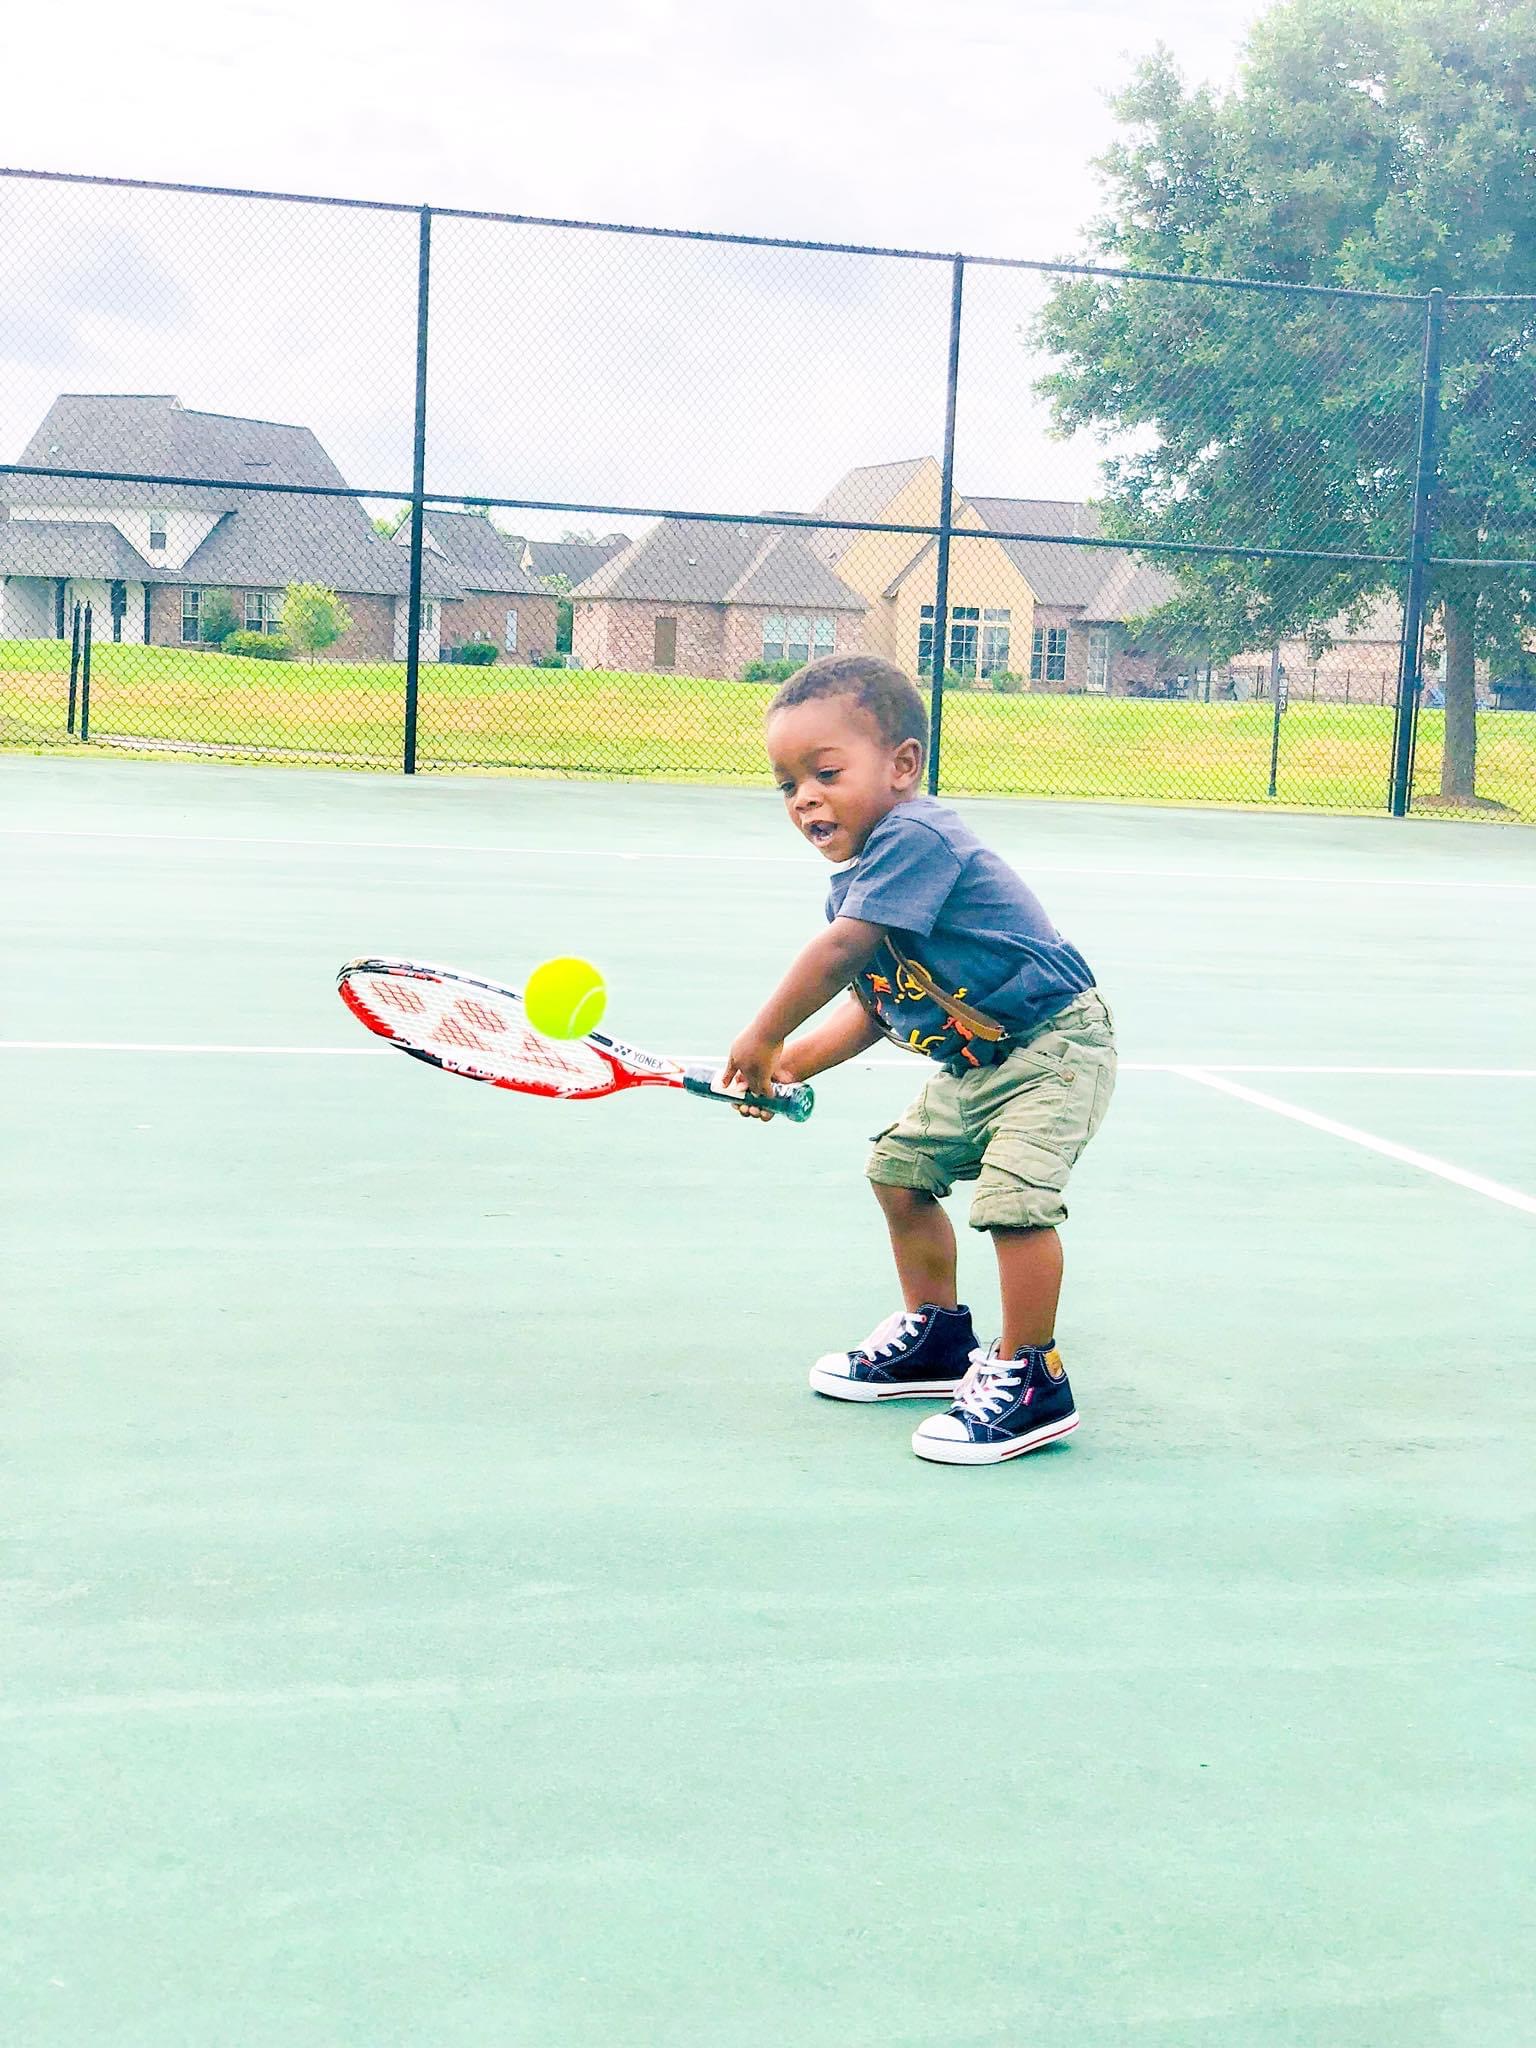 Kid playing tennis